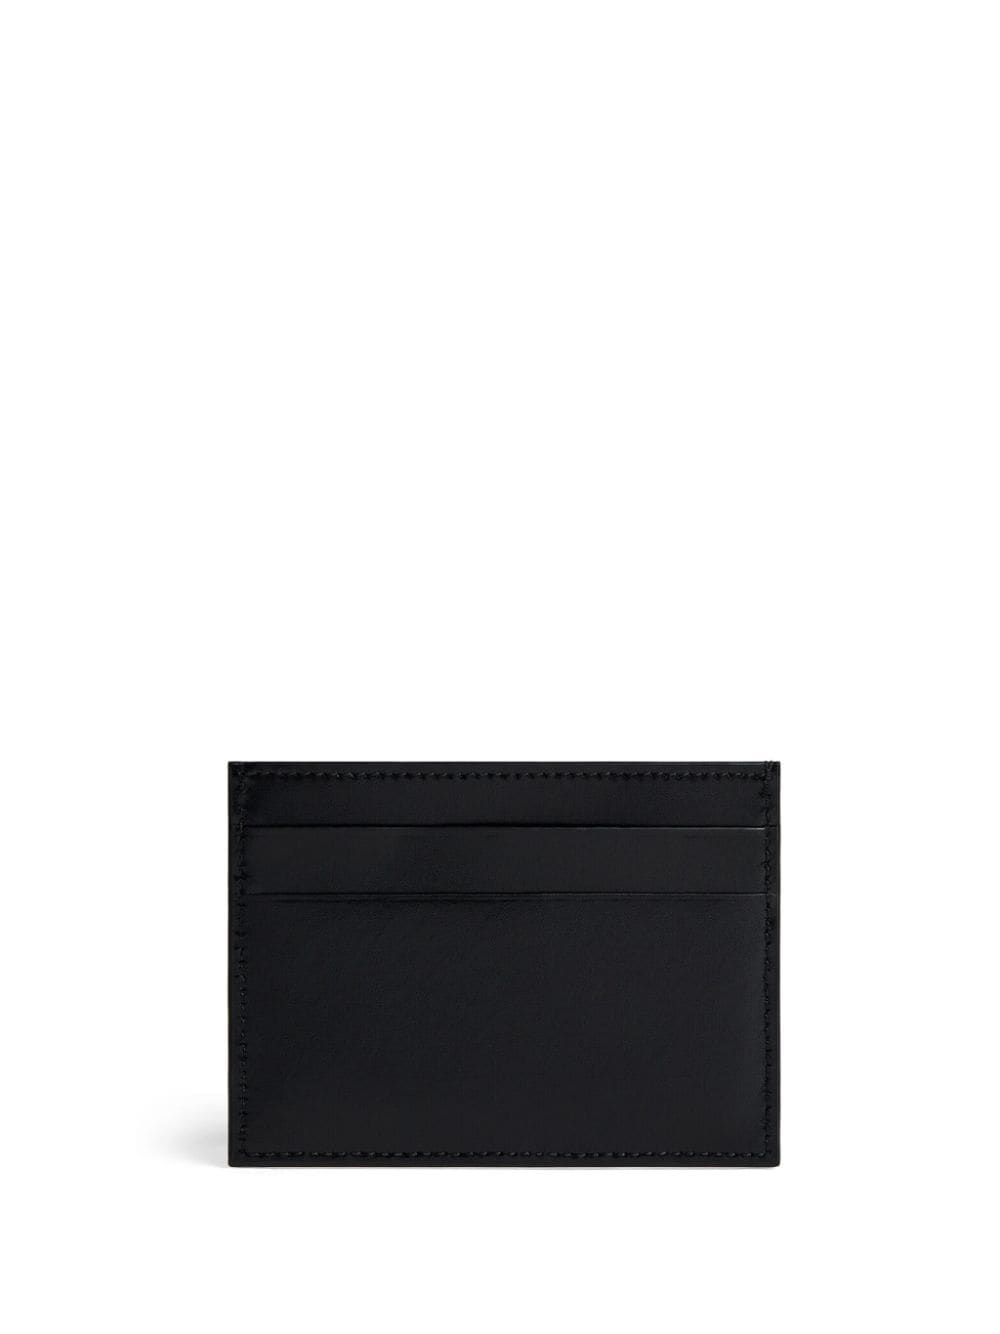 Logo-print leather cardholder<BR/><BR/><BR/>